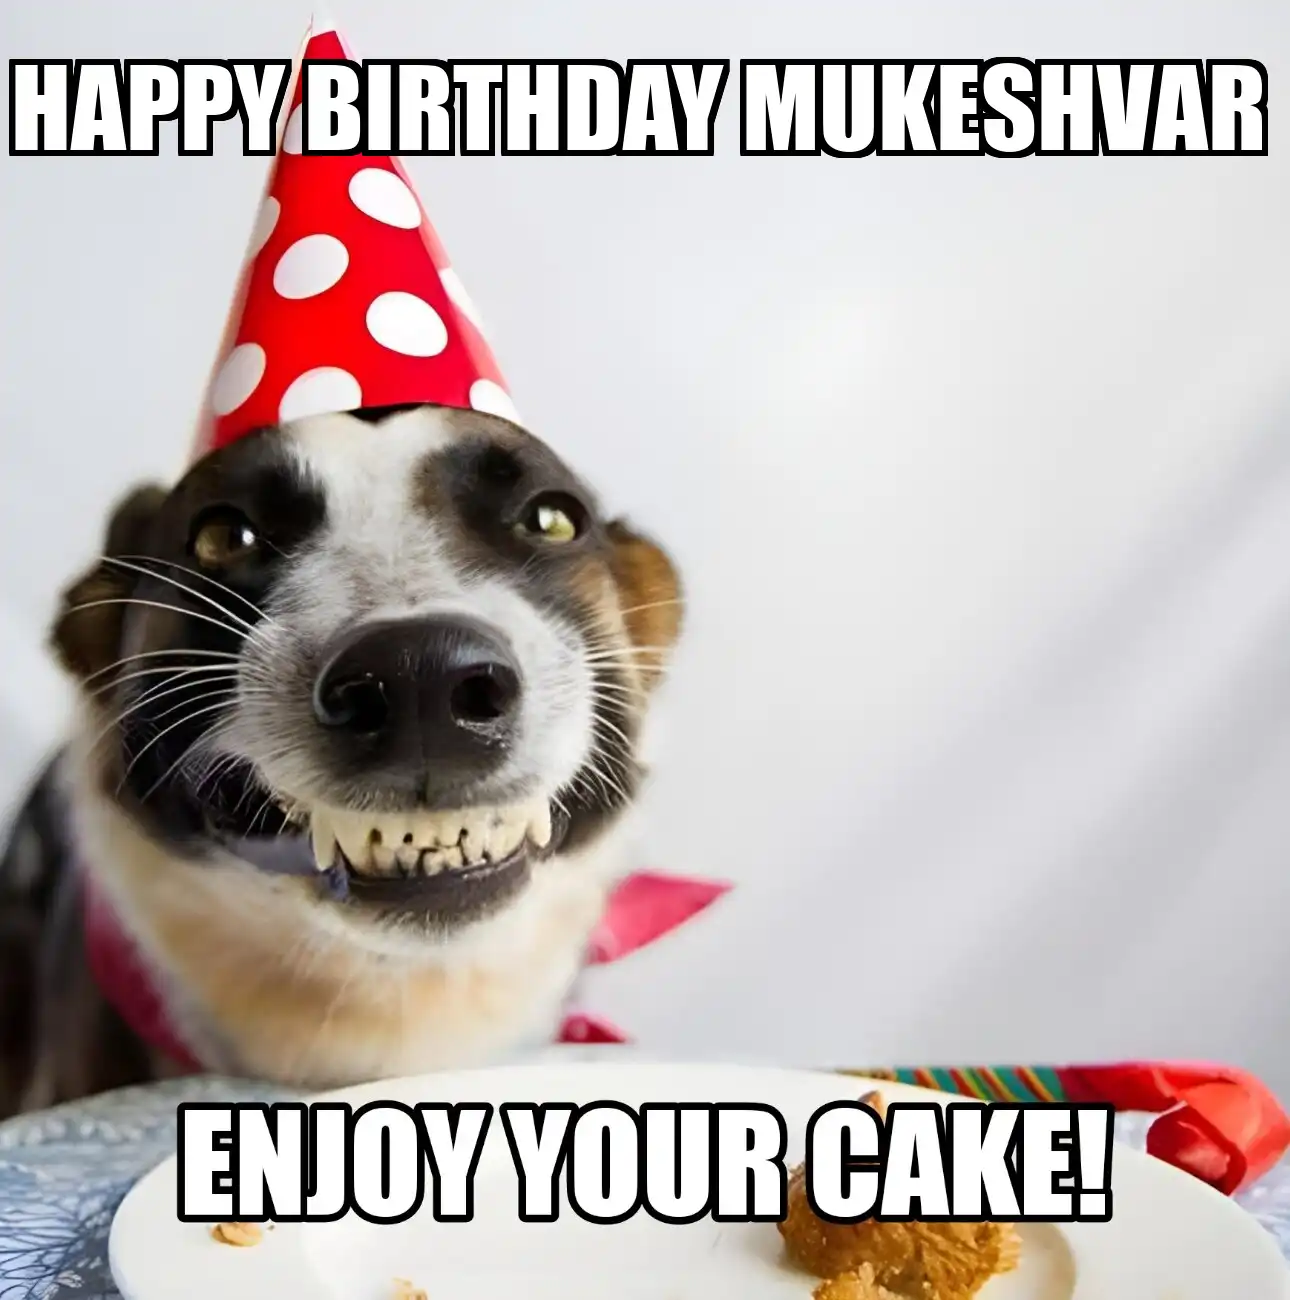 Happy Birthday Mukeshvar Enjoy Your Cake Dog Meme